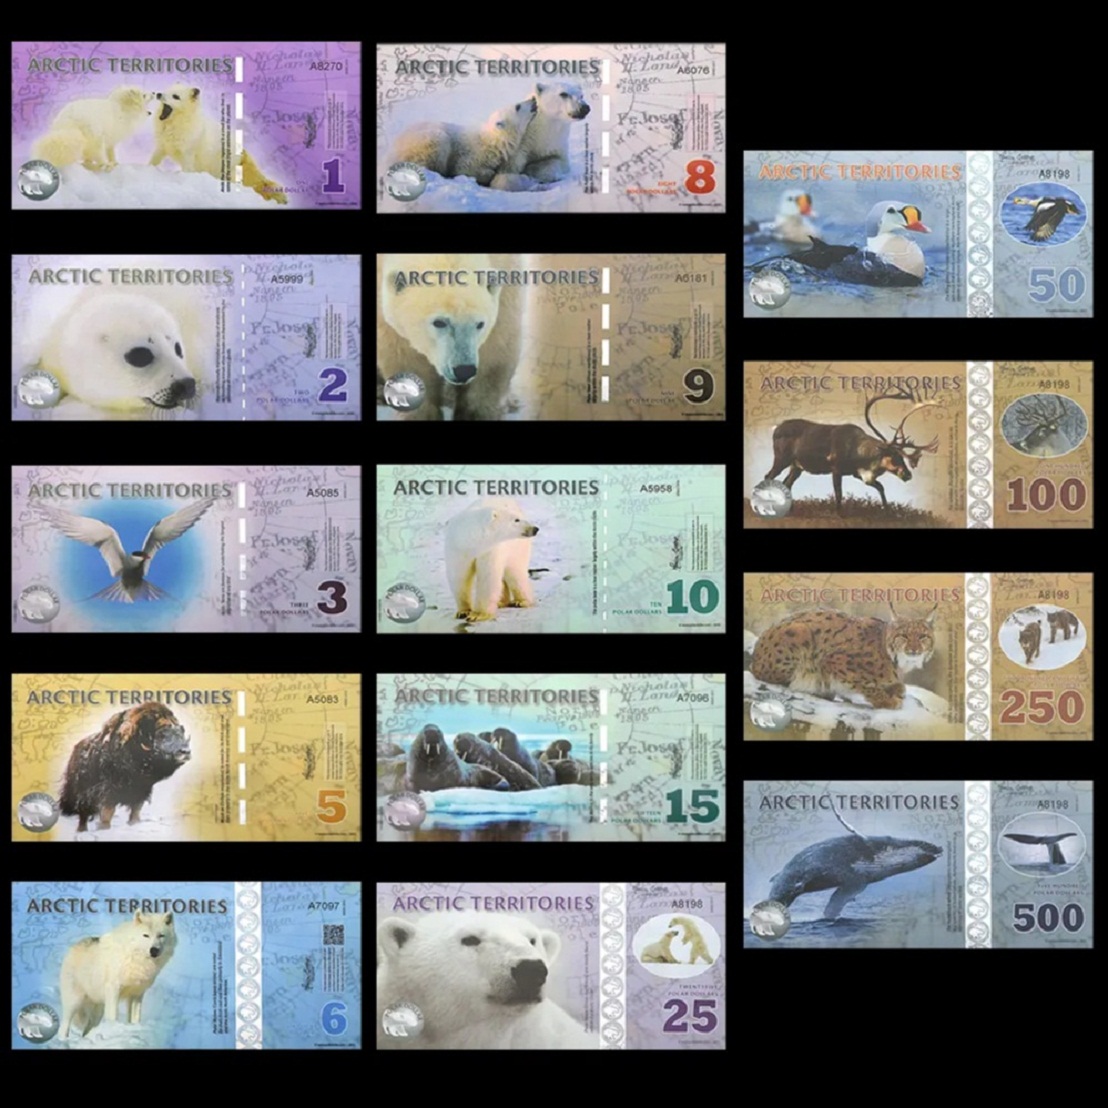  1-500 Dollar Polymer-Banknoten-Satz Arktische Regionen für Sammler   